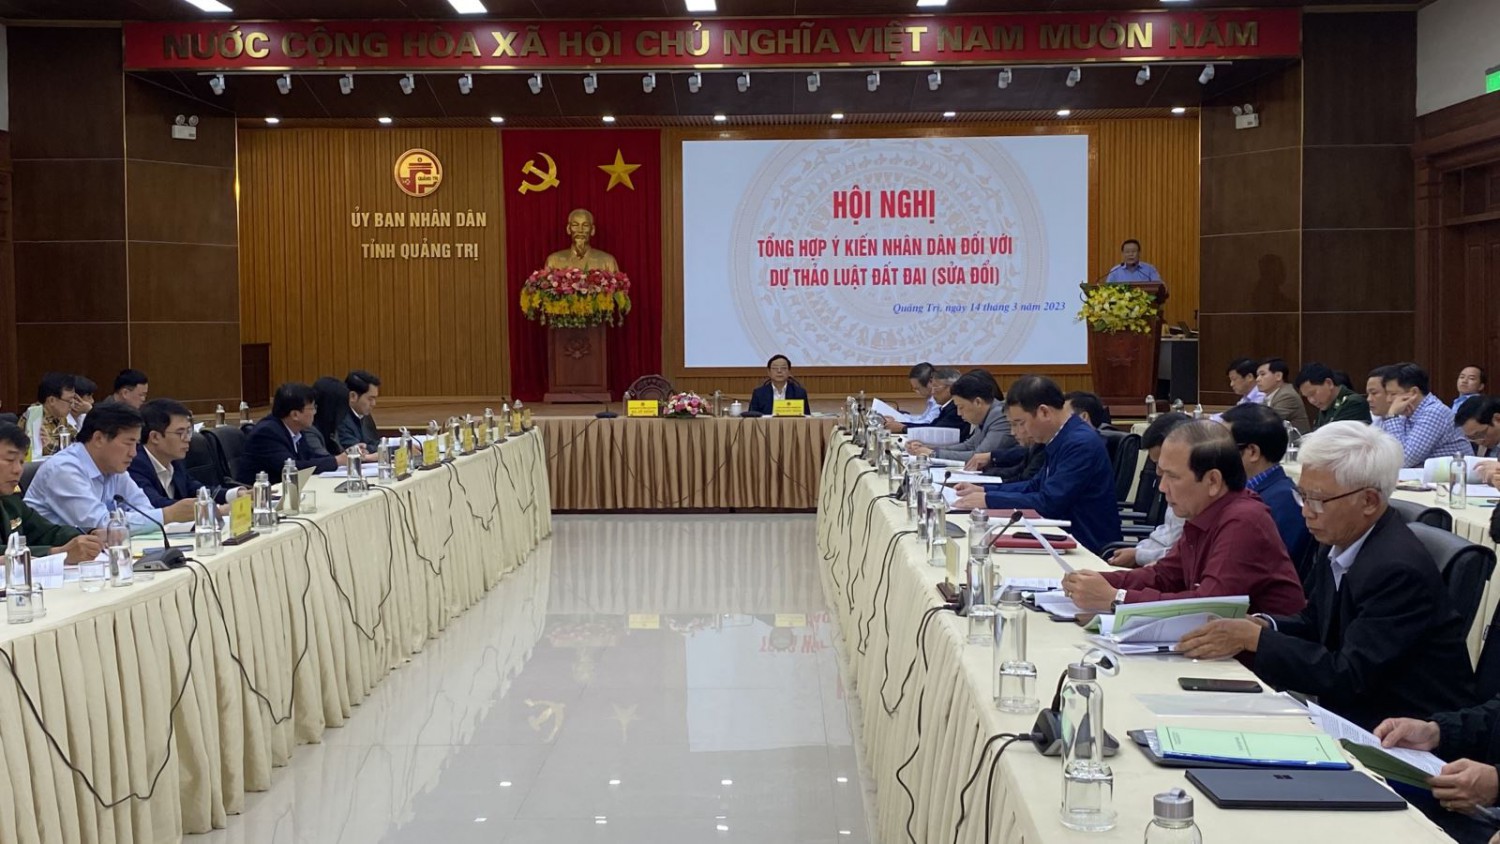 Phó Chủ tịch Thường trực UBND tỉnh Hà Sỹ Đồng phát biểu khai mạc hội nghị